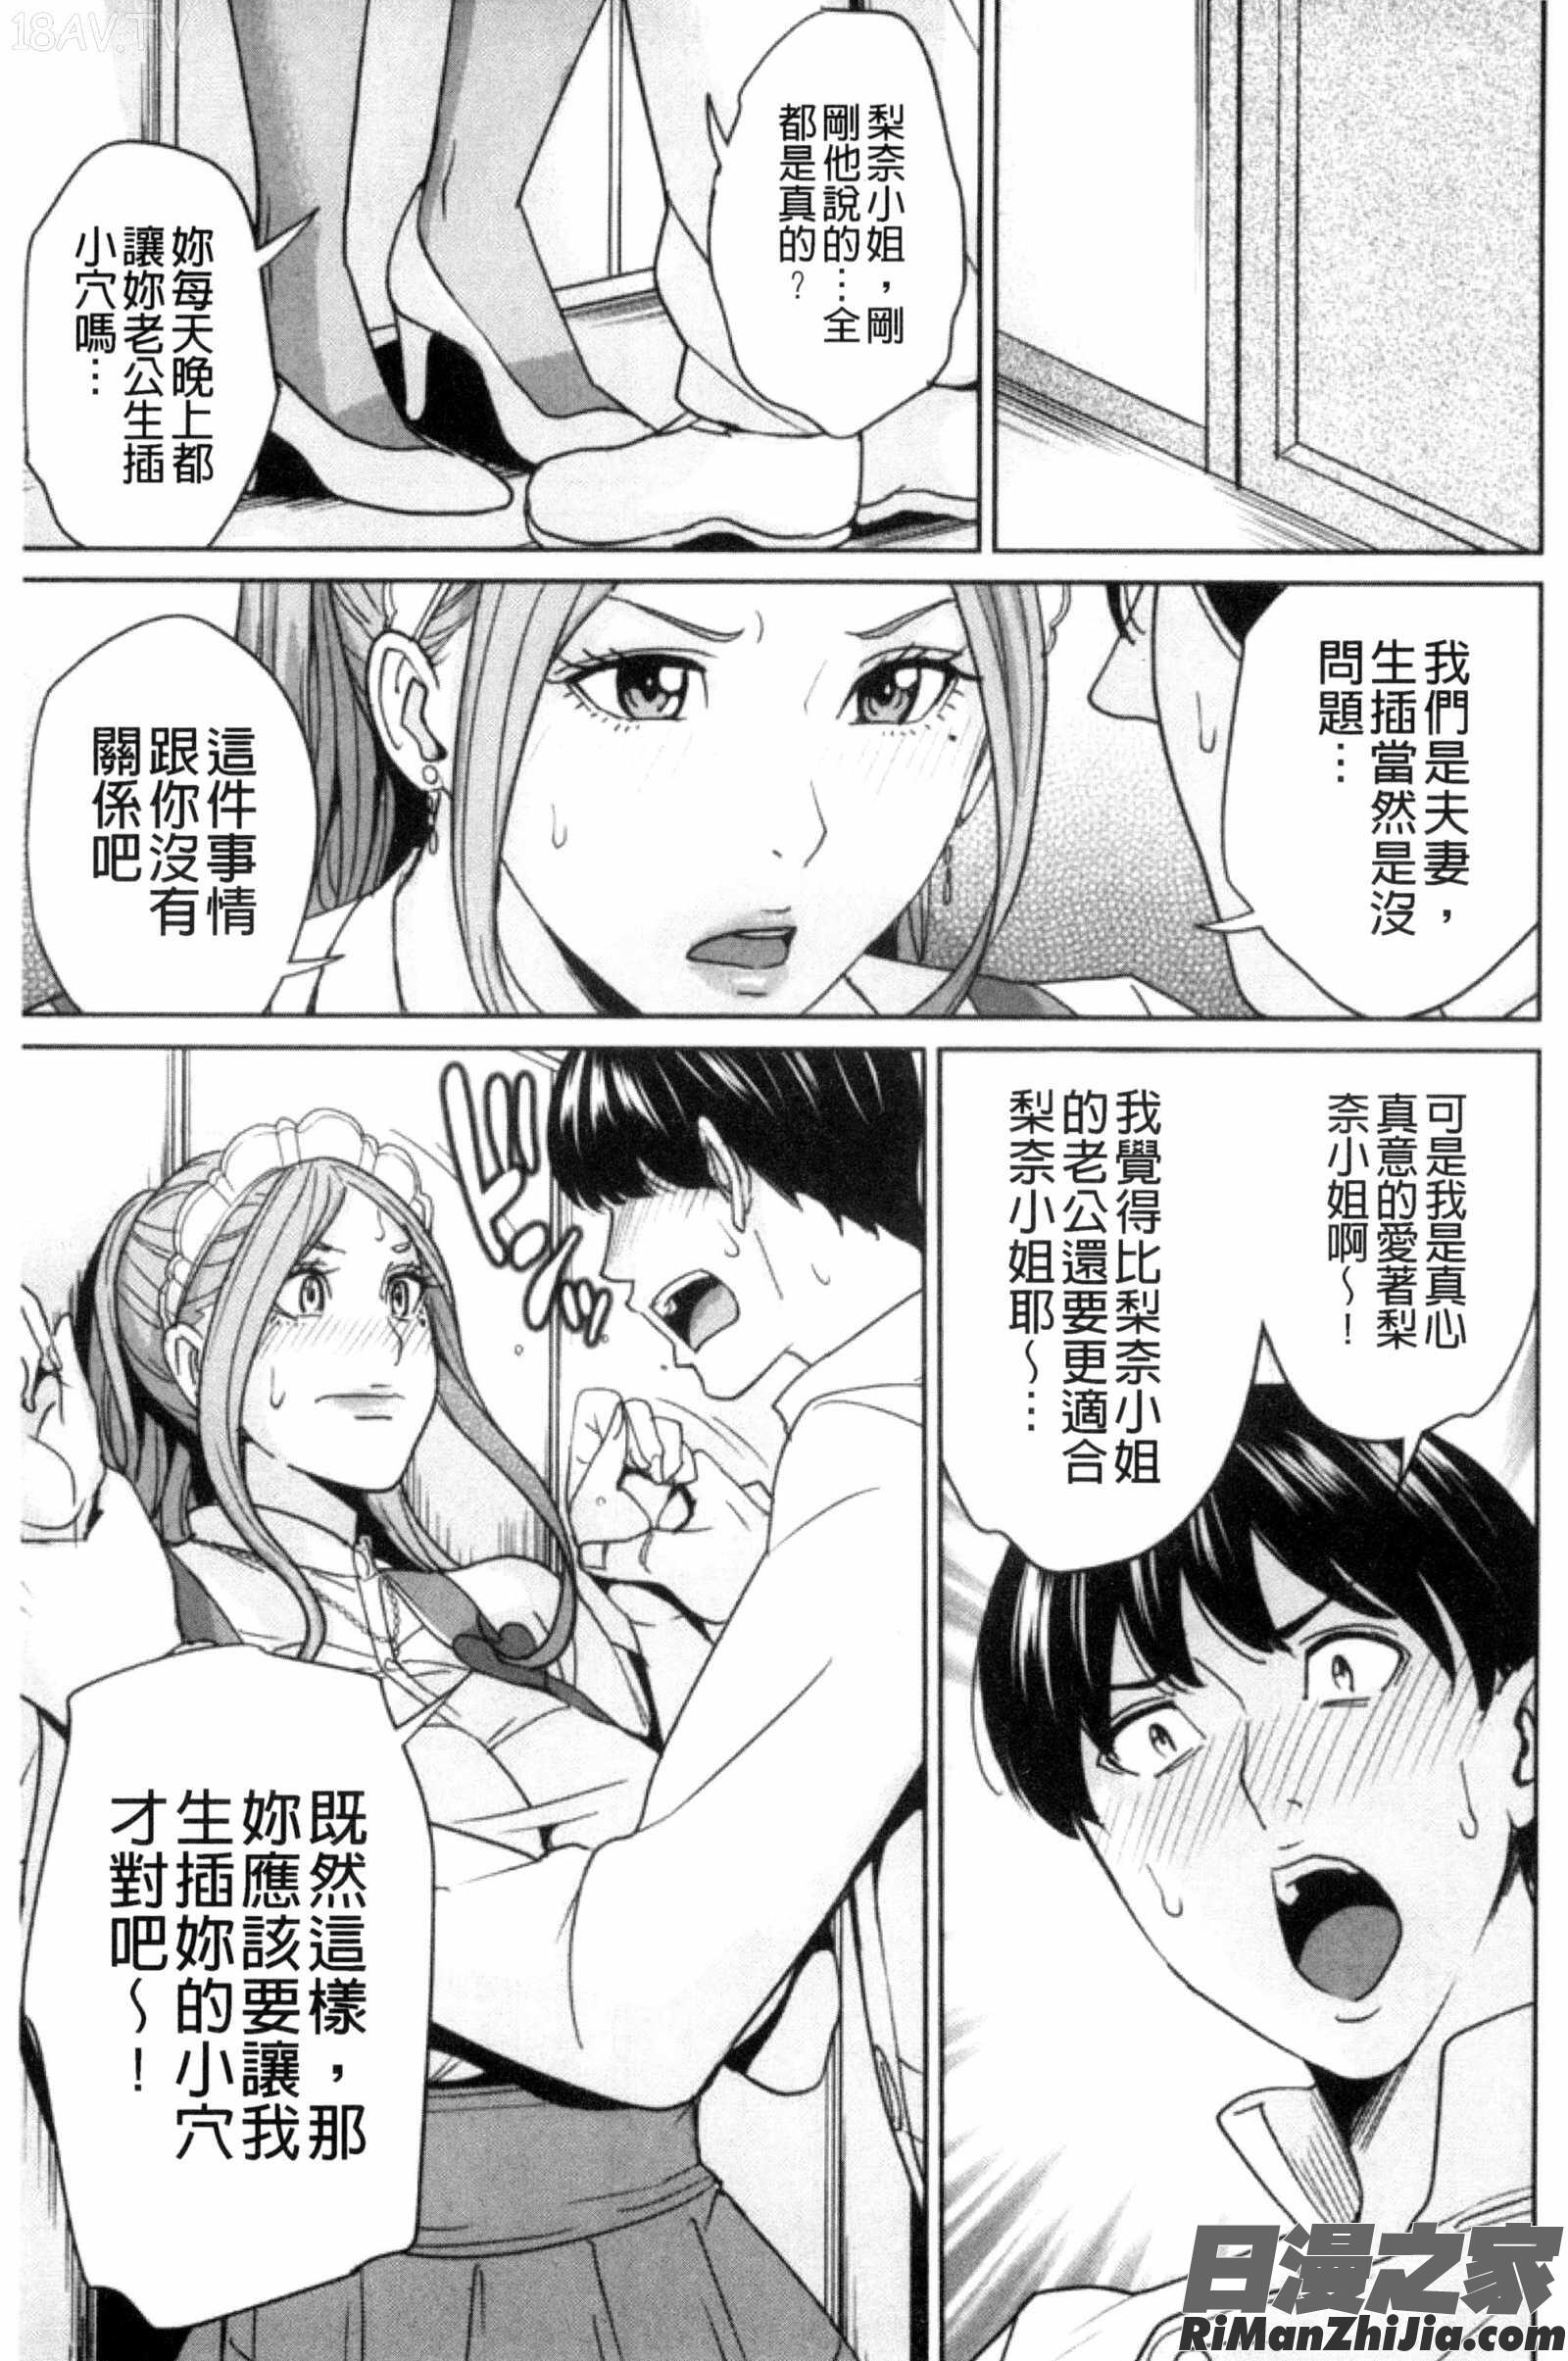 兄嫂淫蕩女性生活_兄嫁ビッチライフ漫画 免费阅读 整部漫画 164.jpg